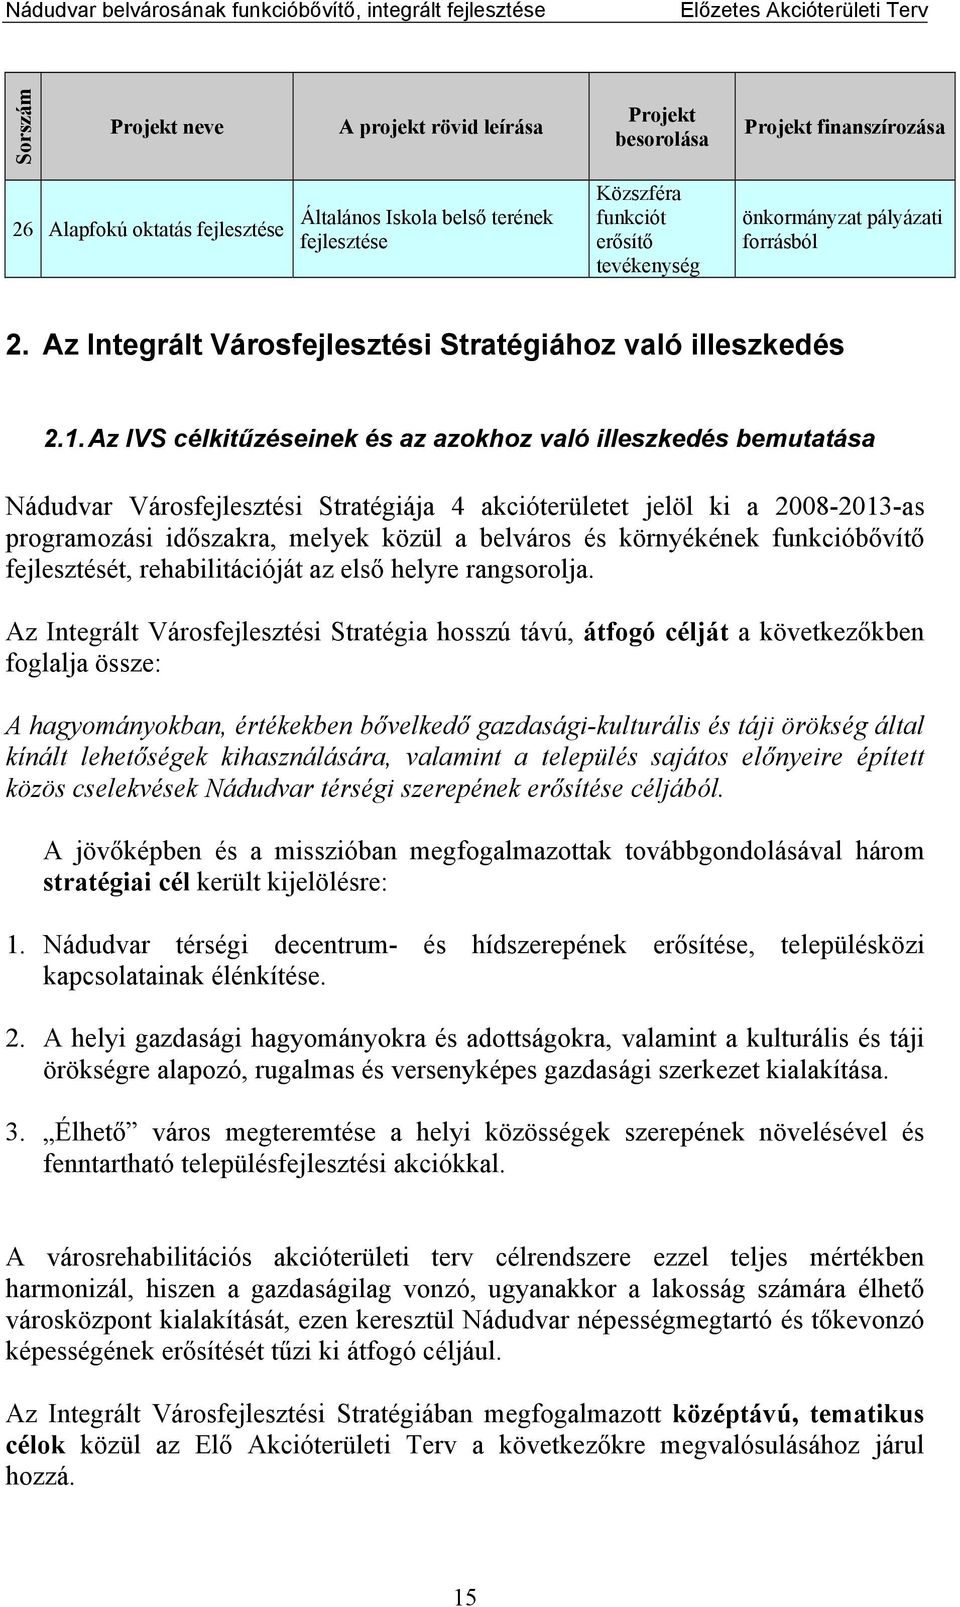 Az IVS célkitűzéseinek és az azokhoz való illeszkedés bemutatása Nádudvar Városfejlesztési Stratégiája 4 akcióterületet jelöl ki a 2008-2013-as programozási időszakra, melyek közül a belváros és